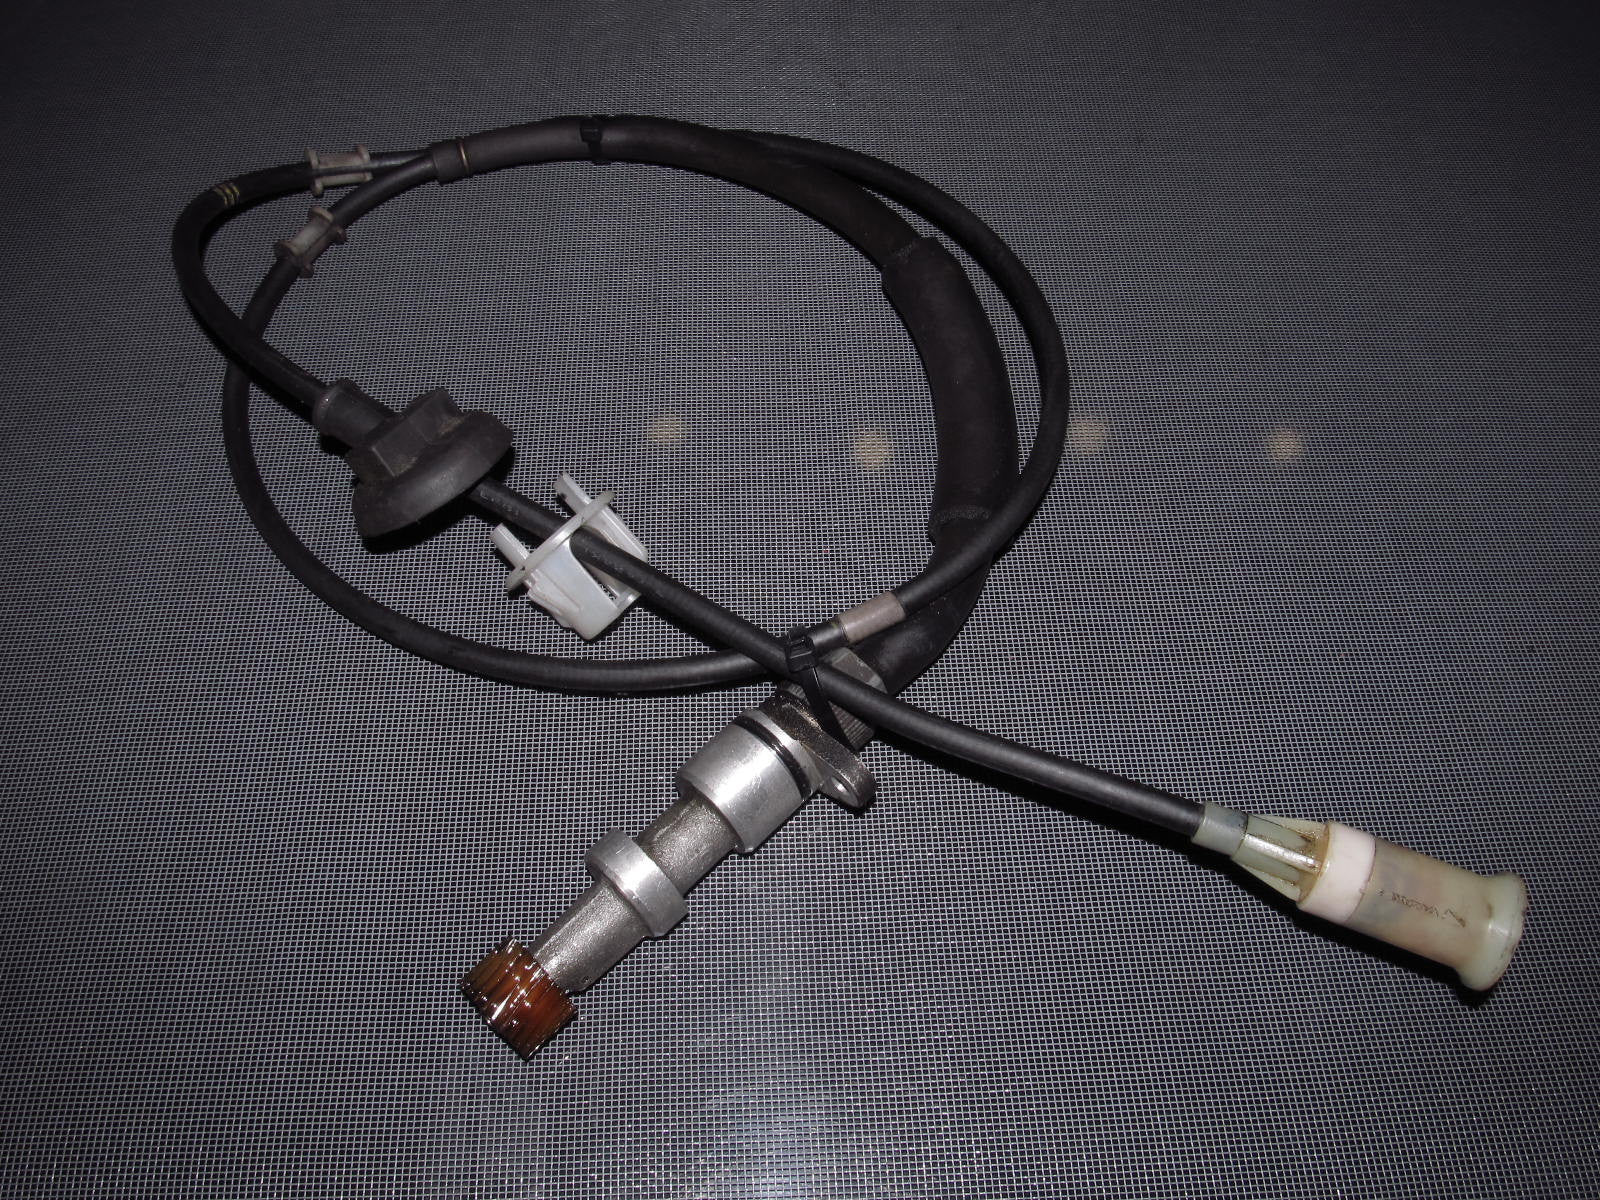 90-93 Miata OEM Speed Sensor with Speedometer Speedo Cable